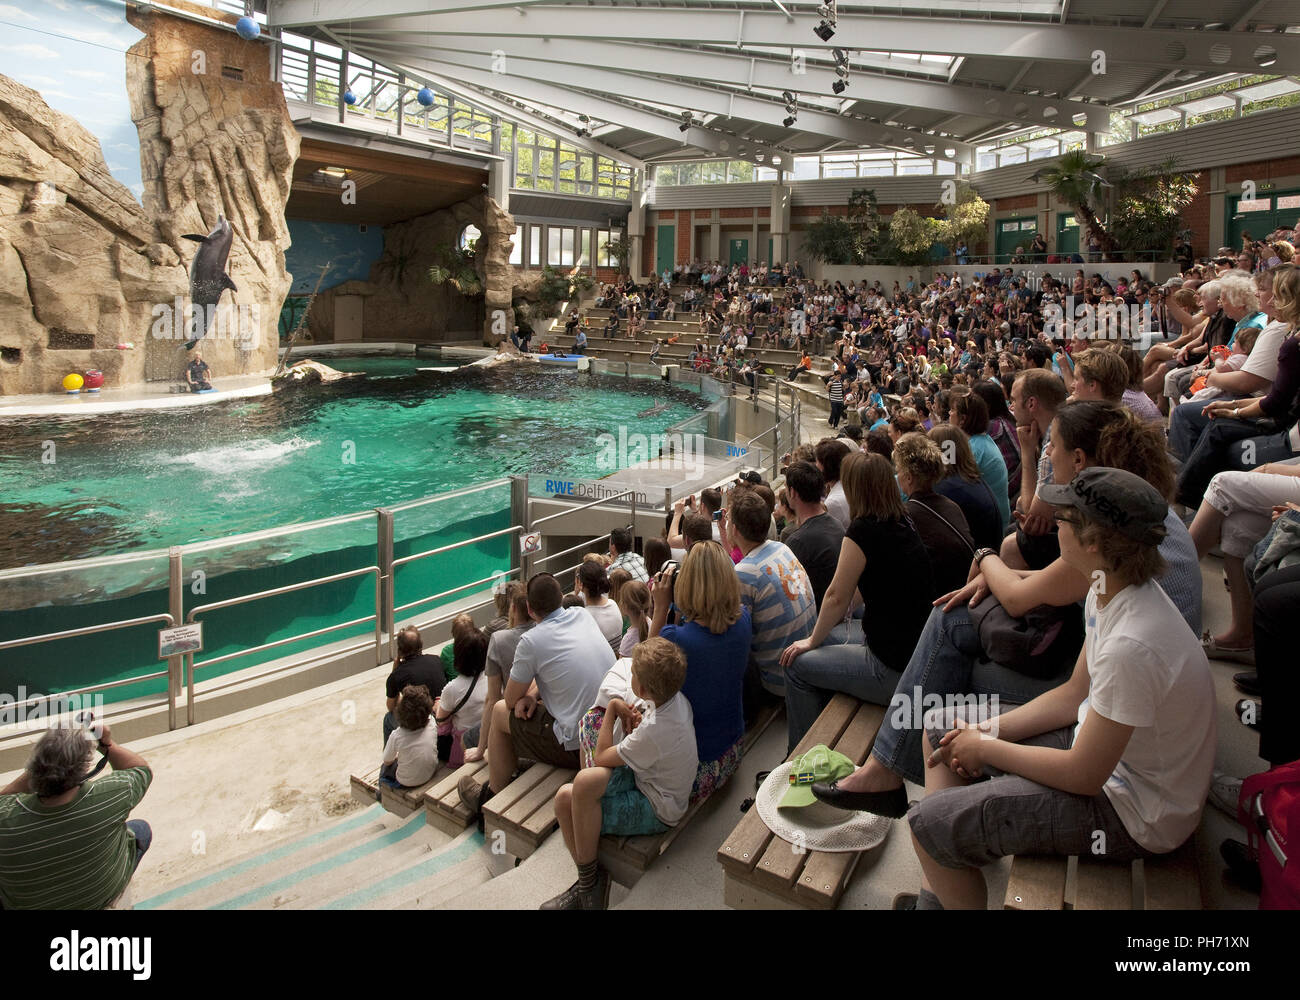 Les gens dans le delphinarium, le zoo de Duisburg, Allemagne. Banque D'Images